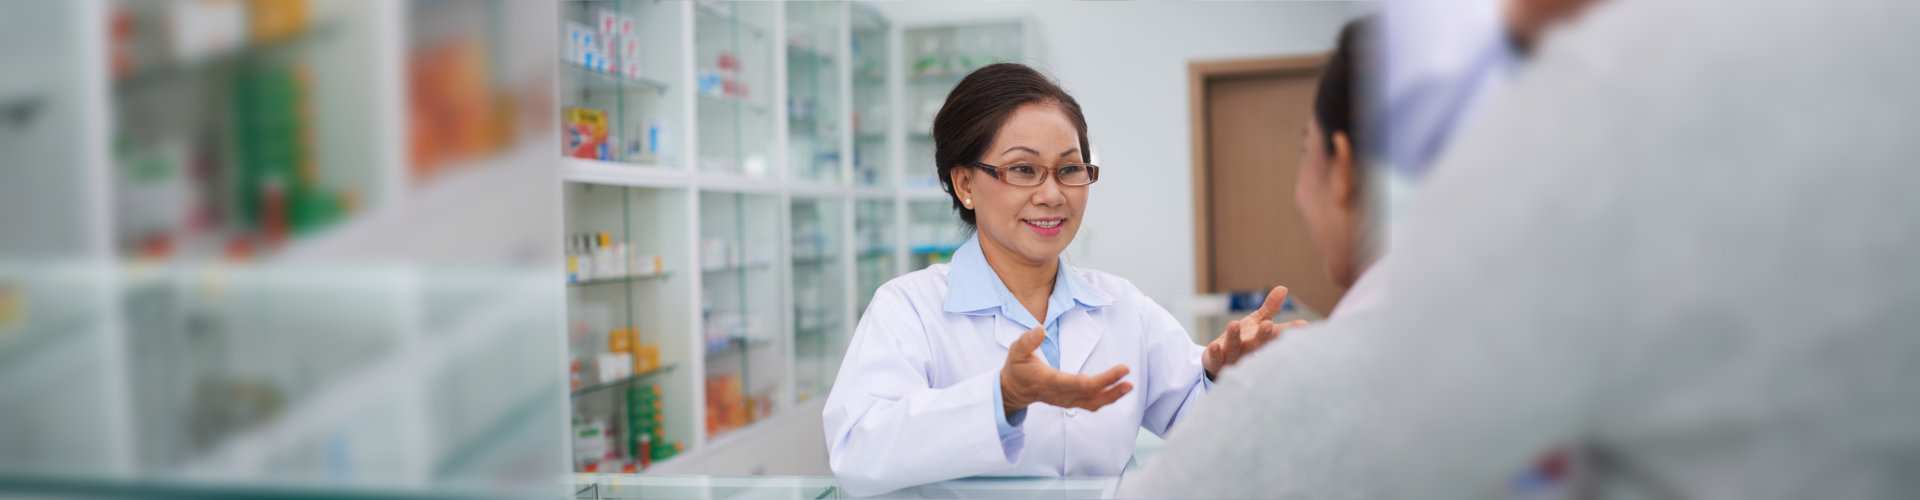 Female pharmacist talking to drugstore customer